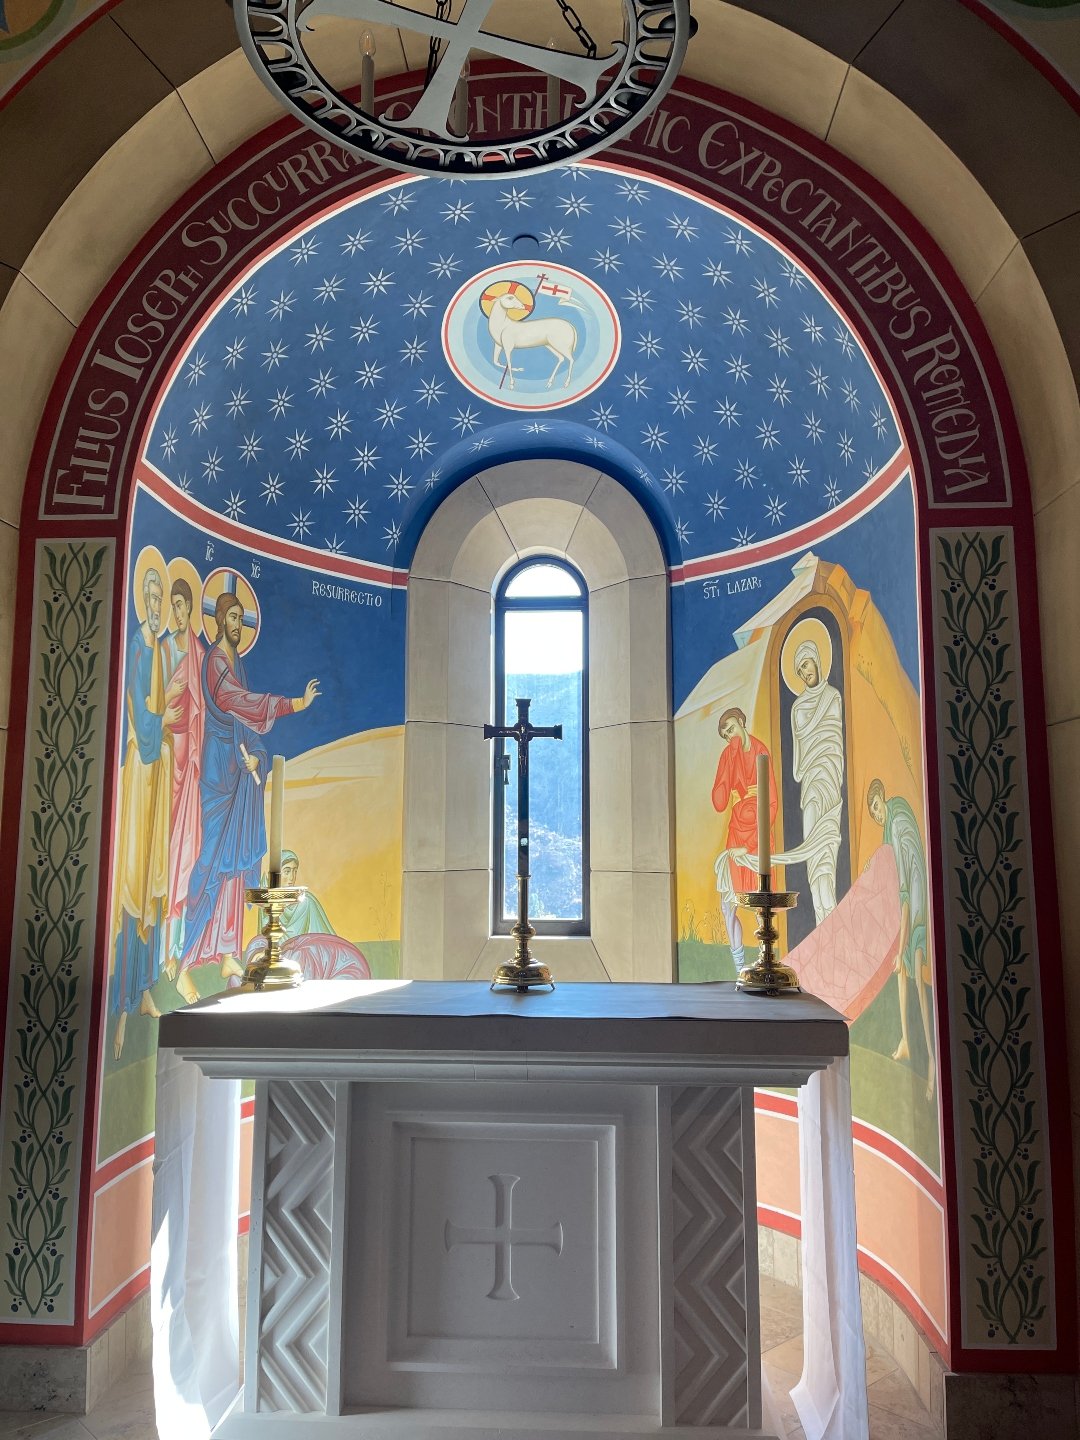 St. Michael's Abbey, Silverado, CA